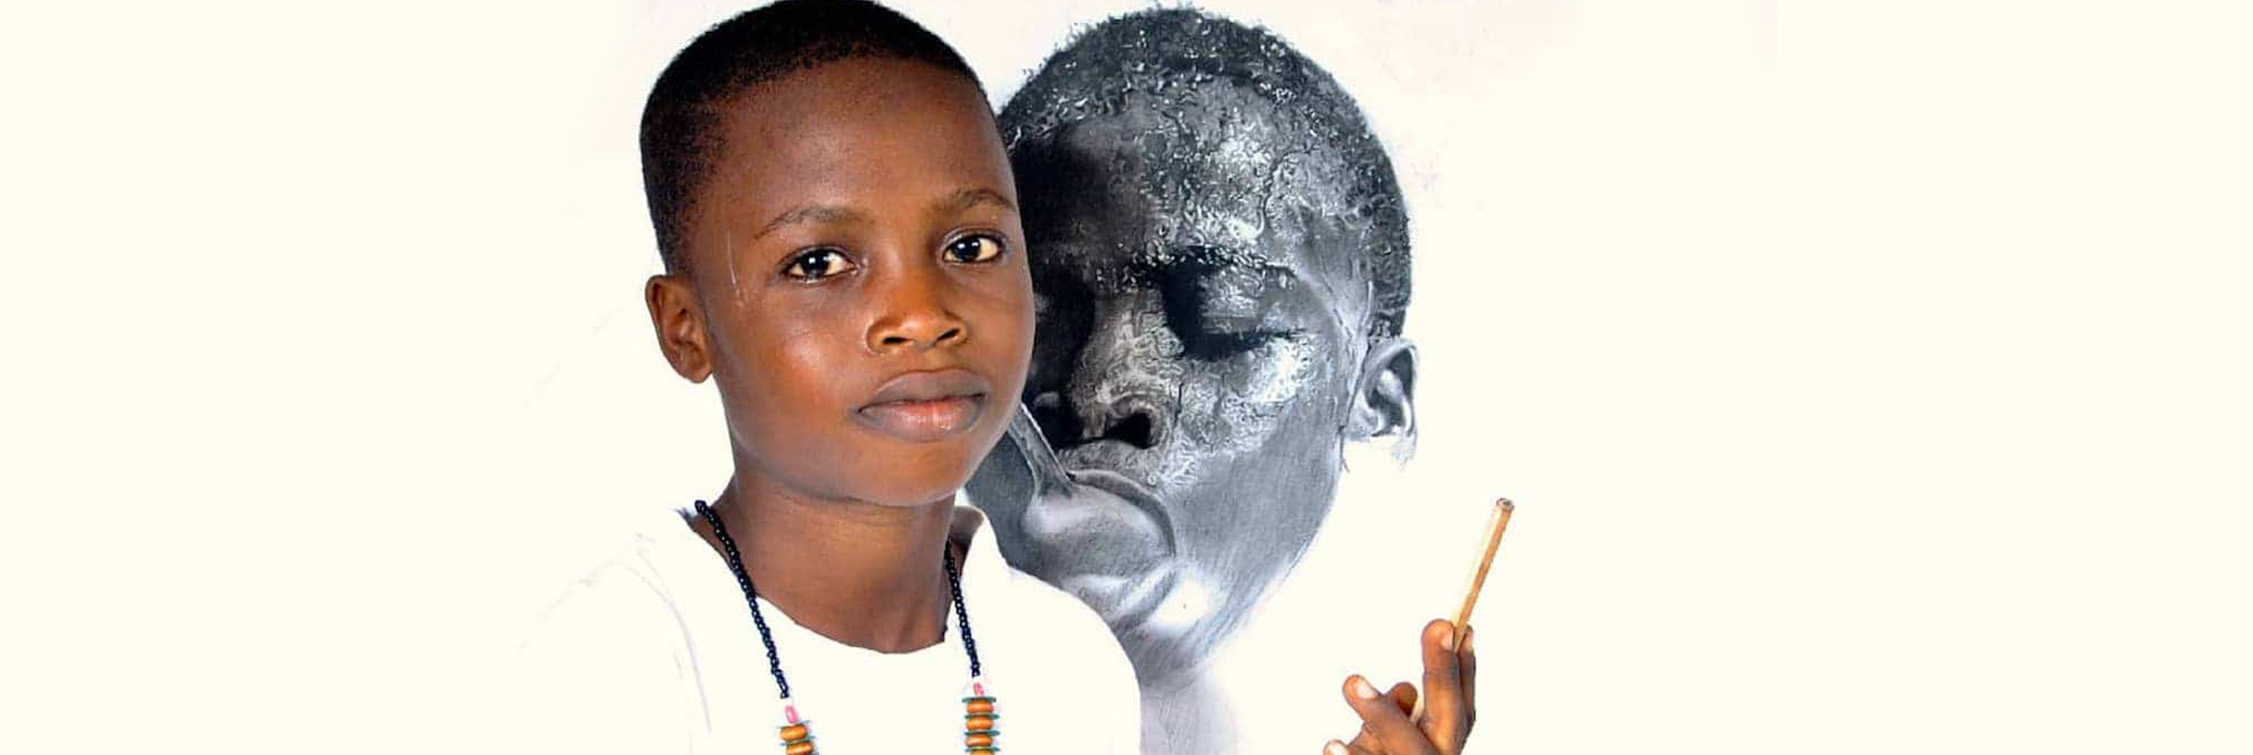 Conoce a este sorprendente artista nigeriano de solo once años